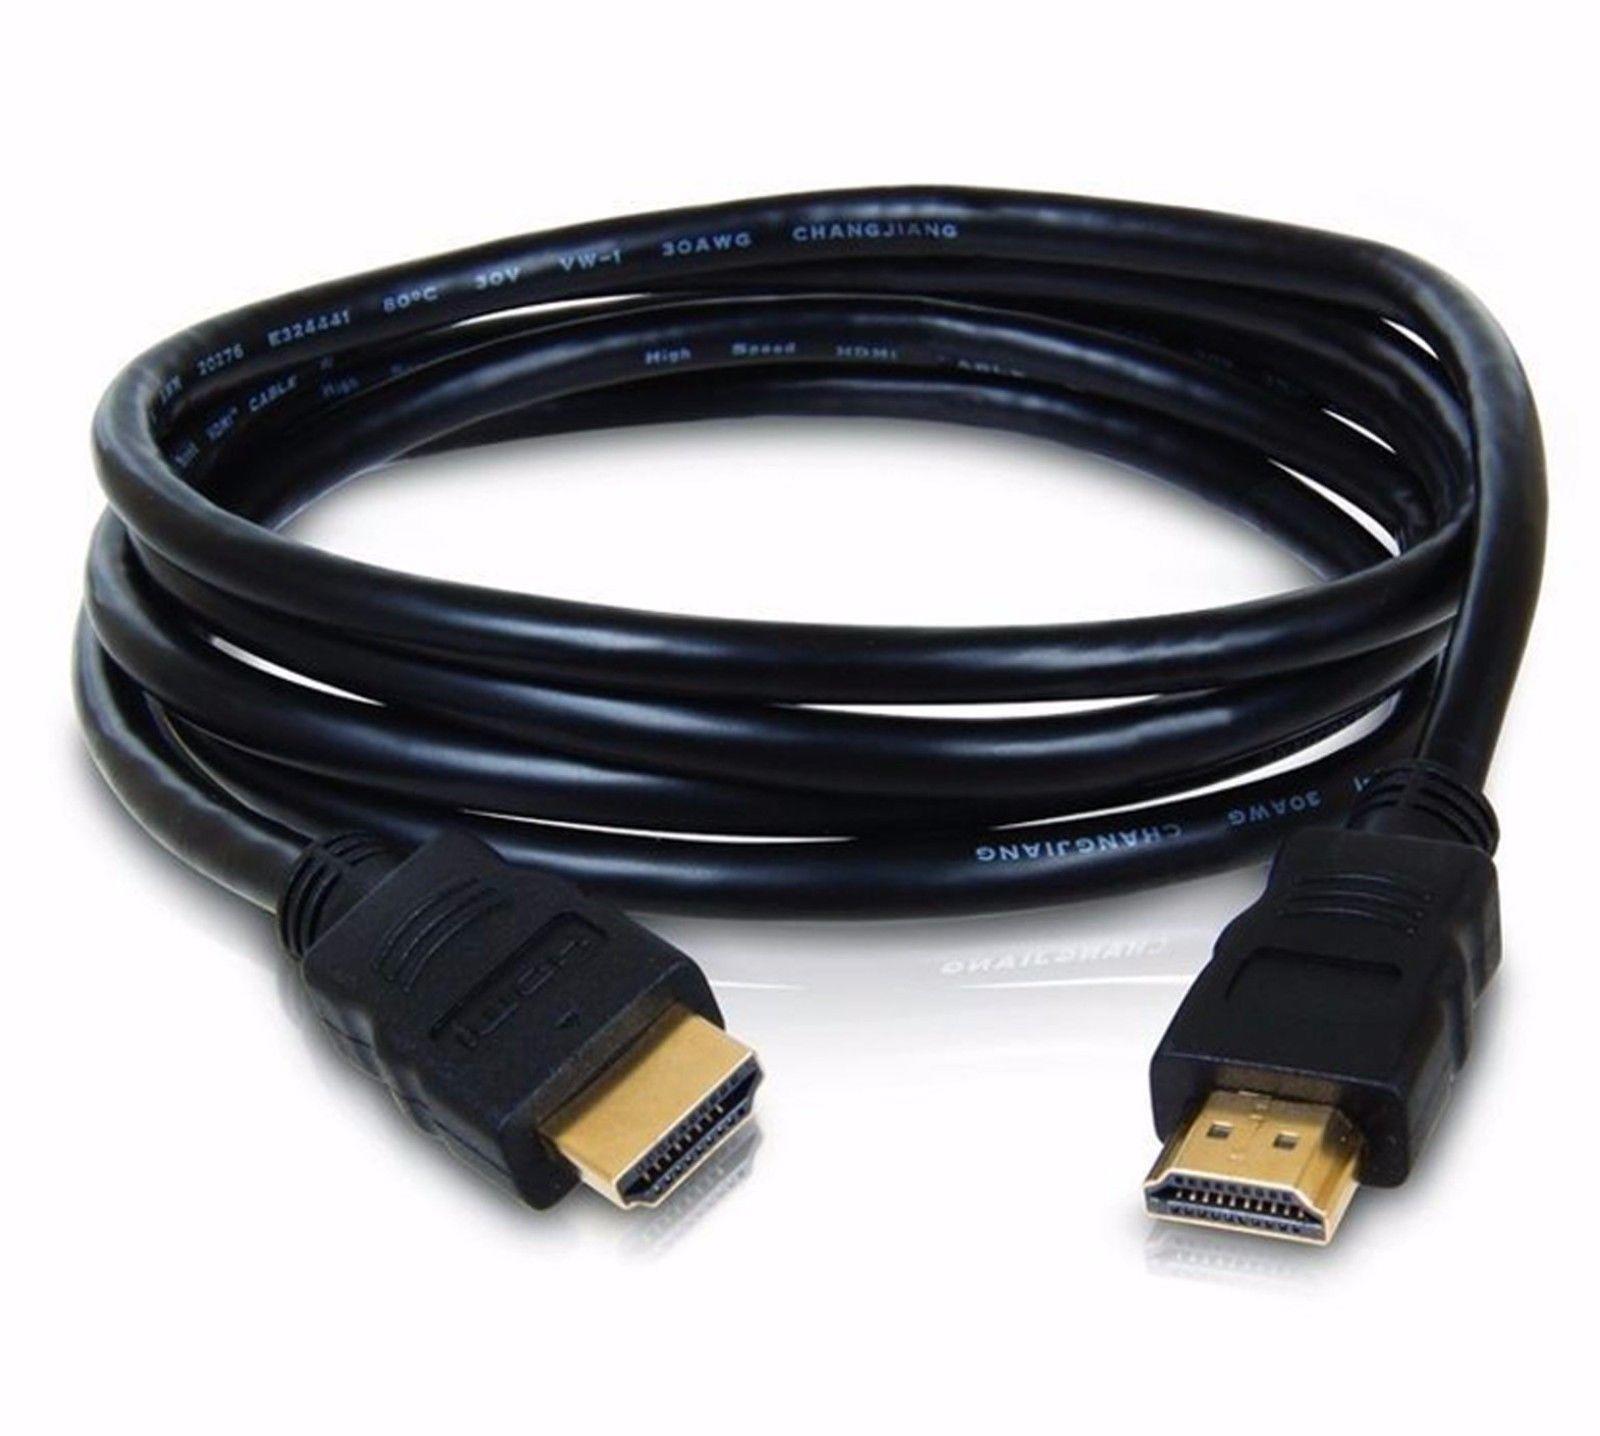 สายยาง TV HDMI 1.8/3/5/10/15/20/30 เมตร สายถักรุ่น HDMI 1.8m/3m/5m/10m/15m/20m/30m cable V1.4 3D FULL HD 1080P